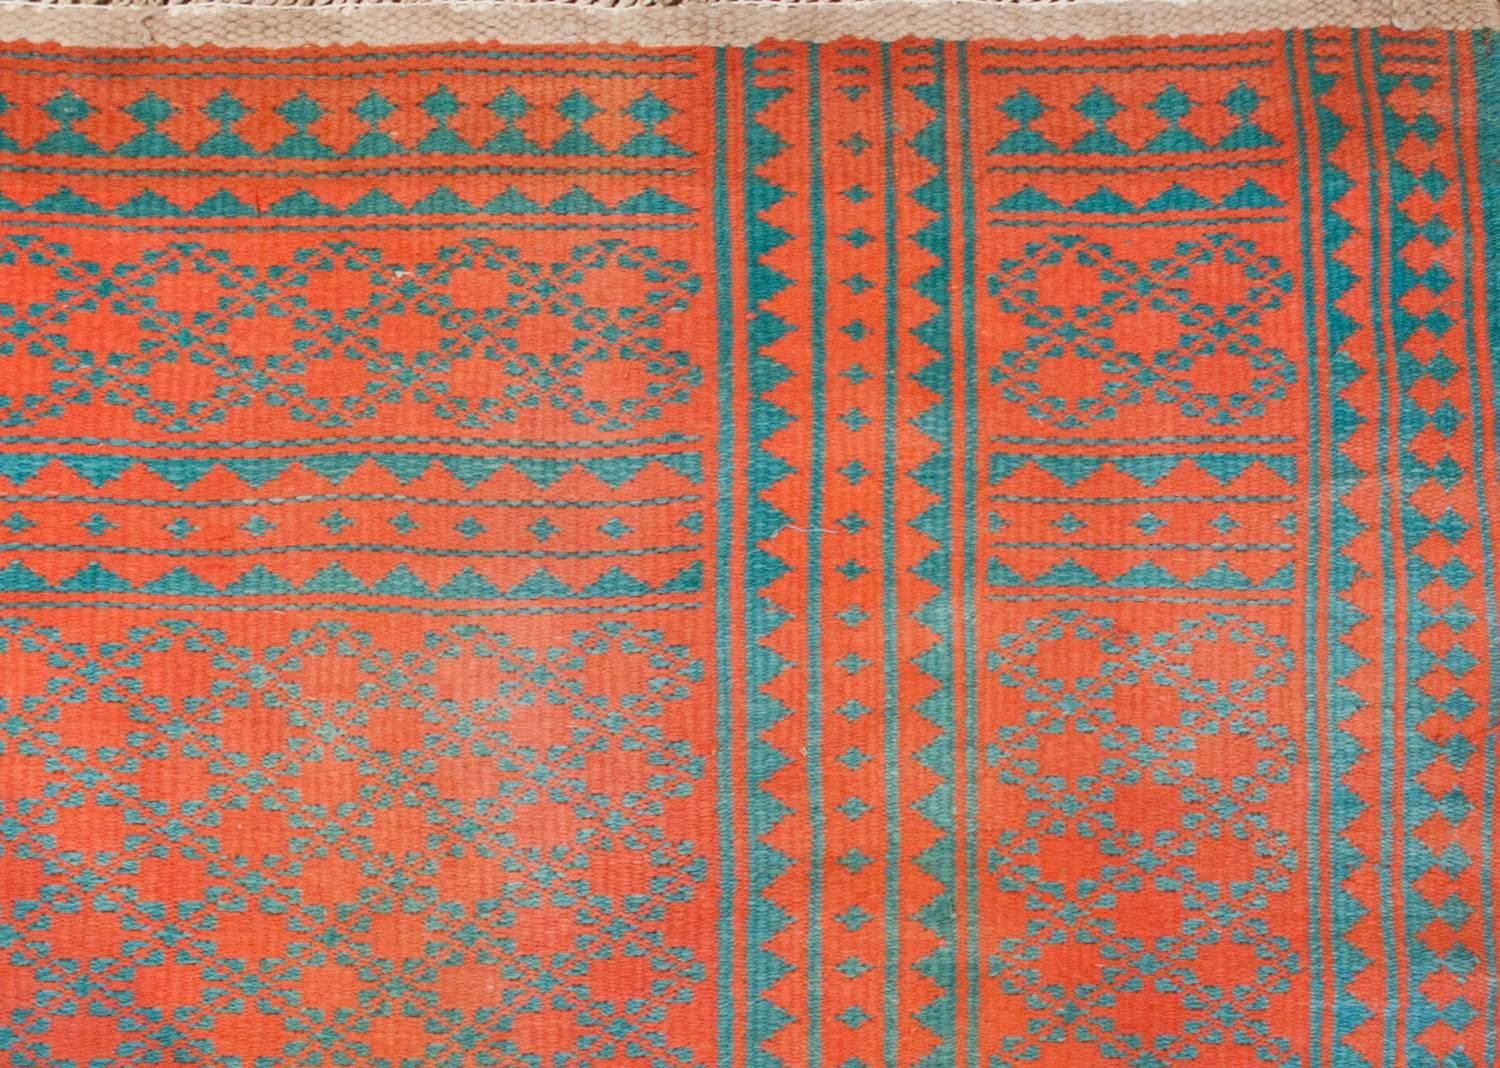 Ein persischer Saveh-Kilim-Teppich aus dem frühen 20. Jahrhundert, gewebt aus natürlich gefärbter Baumwolle, mit einem schönen Allover-Feld aus kleinformatigen türkisfarbenen Blumen auf einem wunderschönen korallenroten Hintergrund, flankiert von